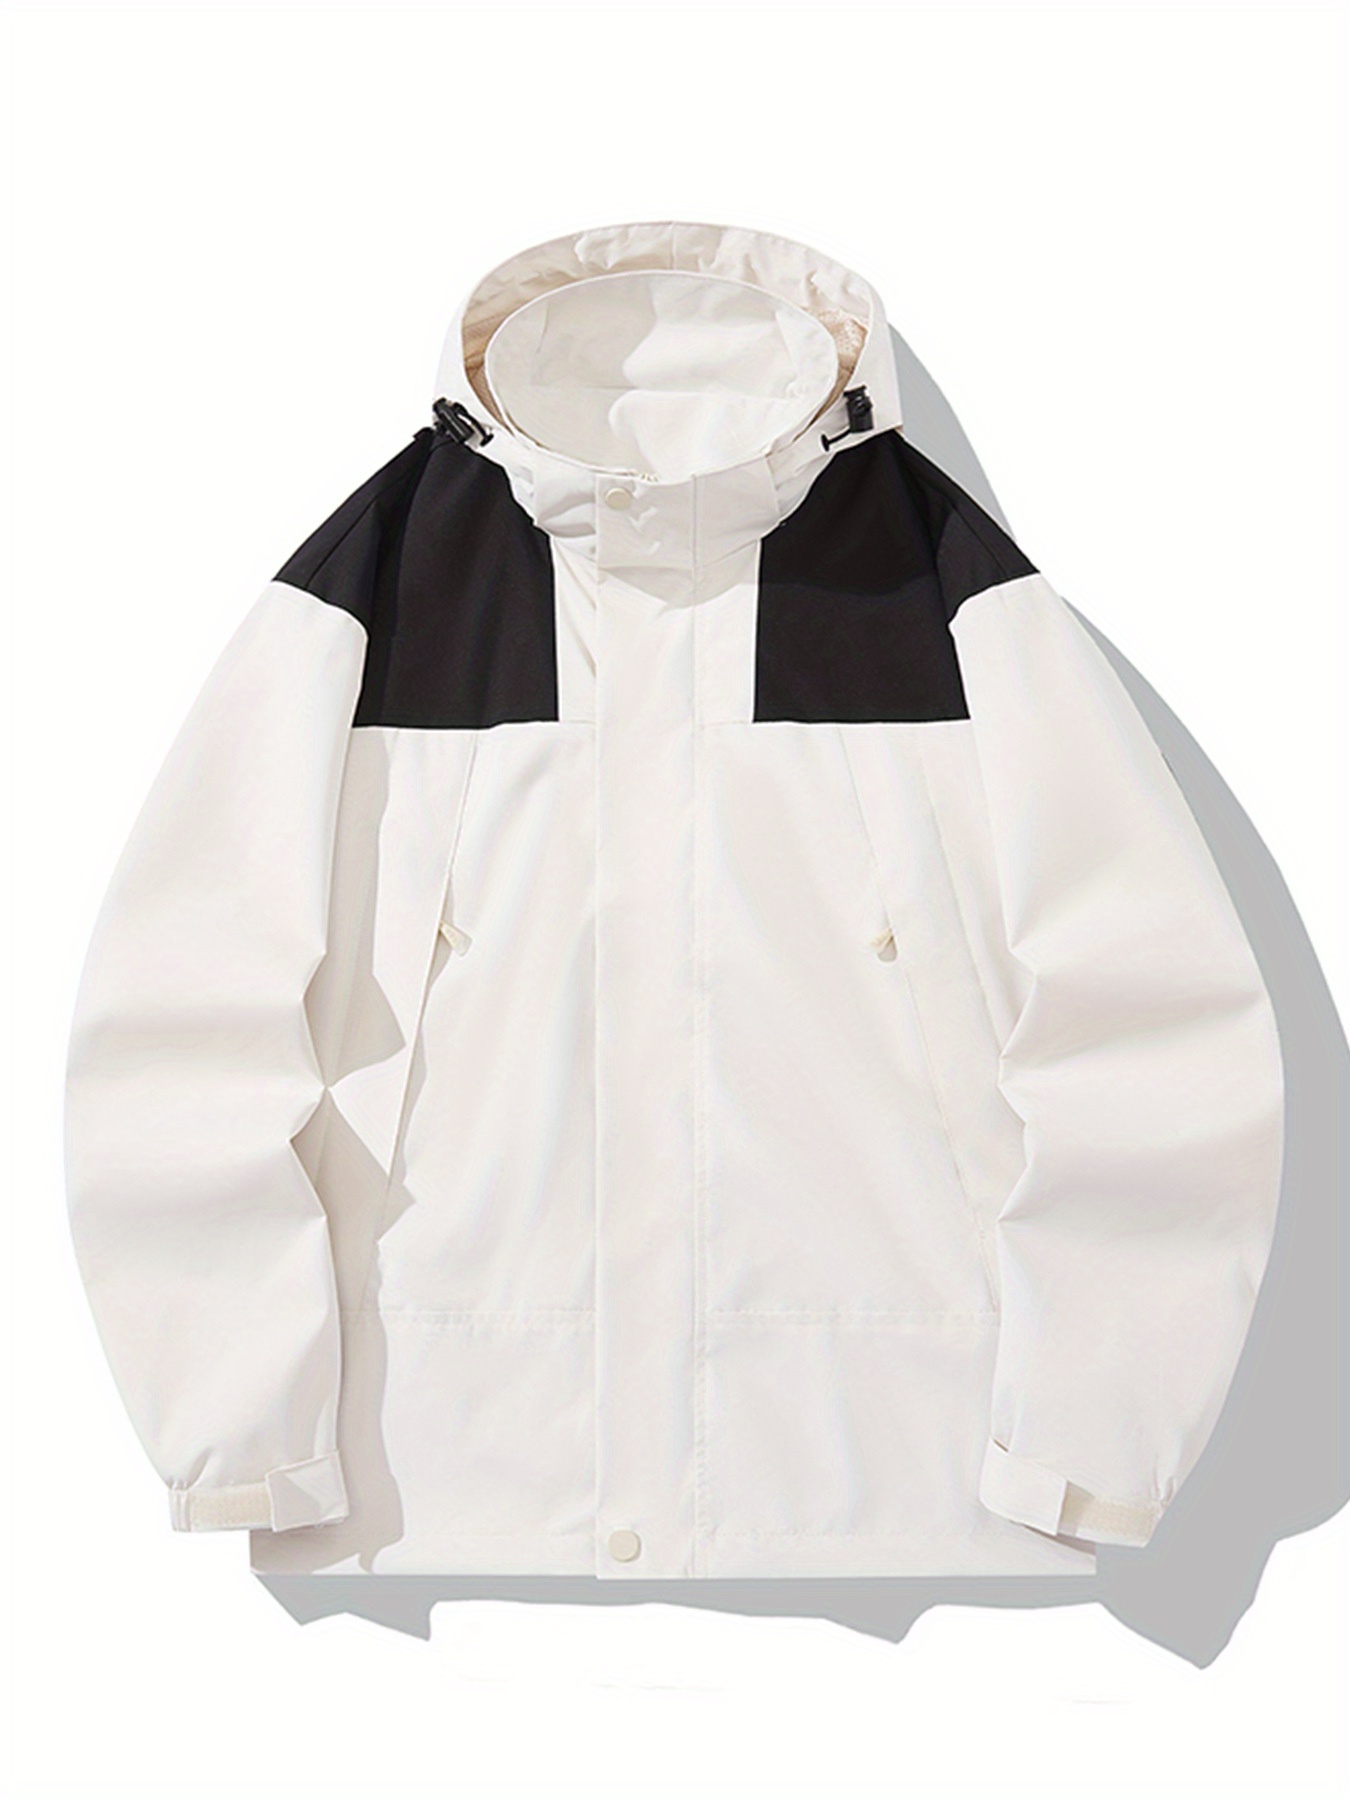 Windbreaker Hooded Jacket, Herr Casual Zip Up Jacket Coat För Fall Winter  Utdoor Activities